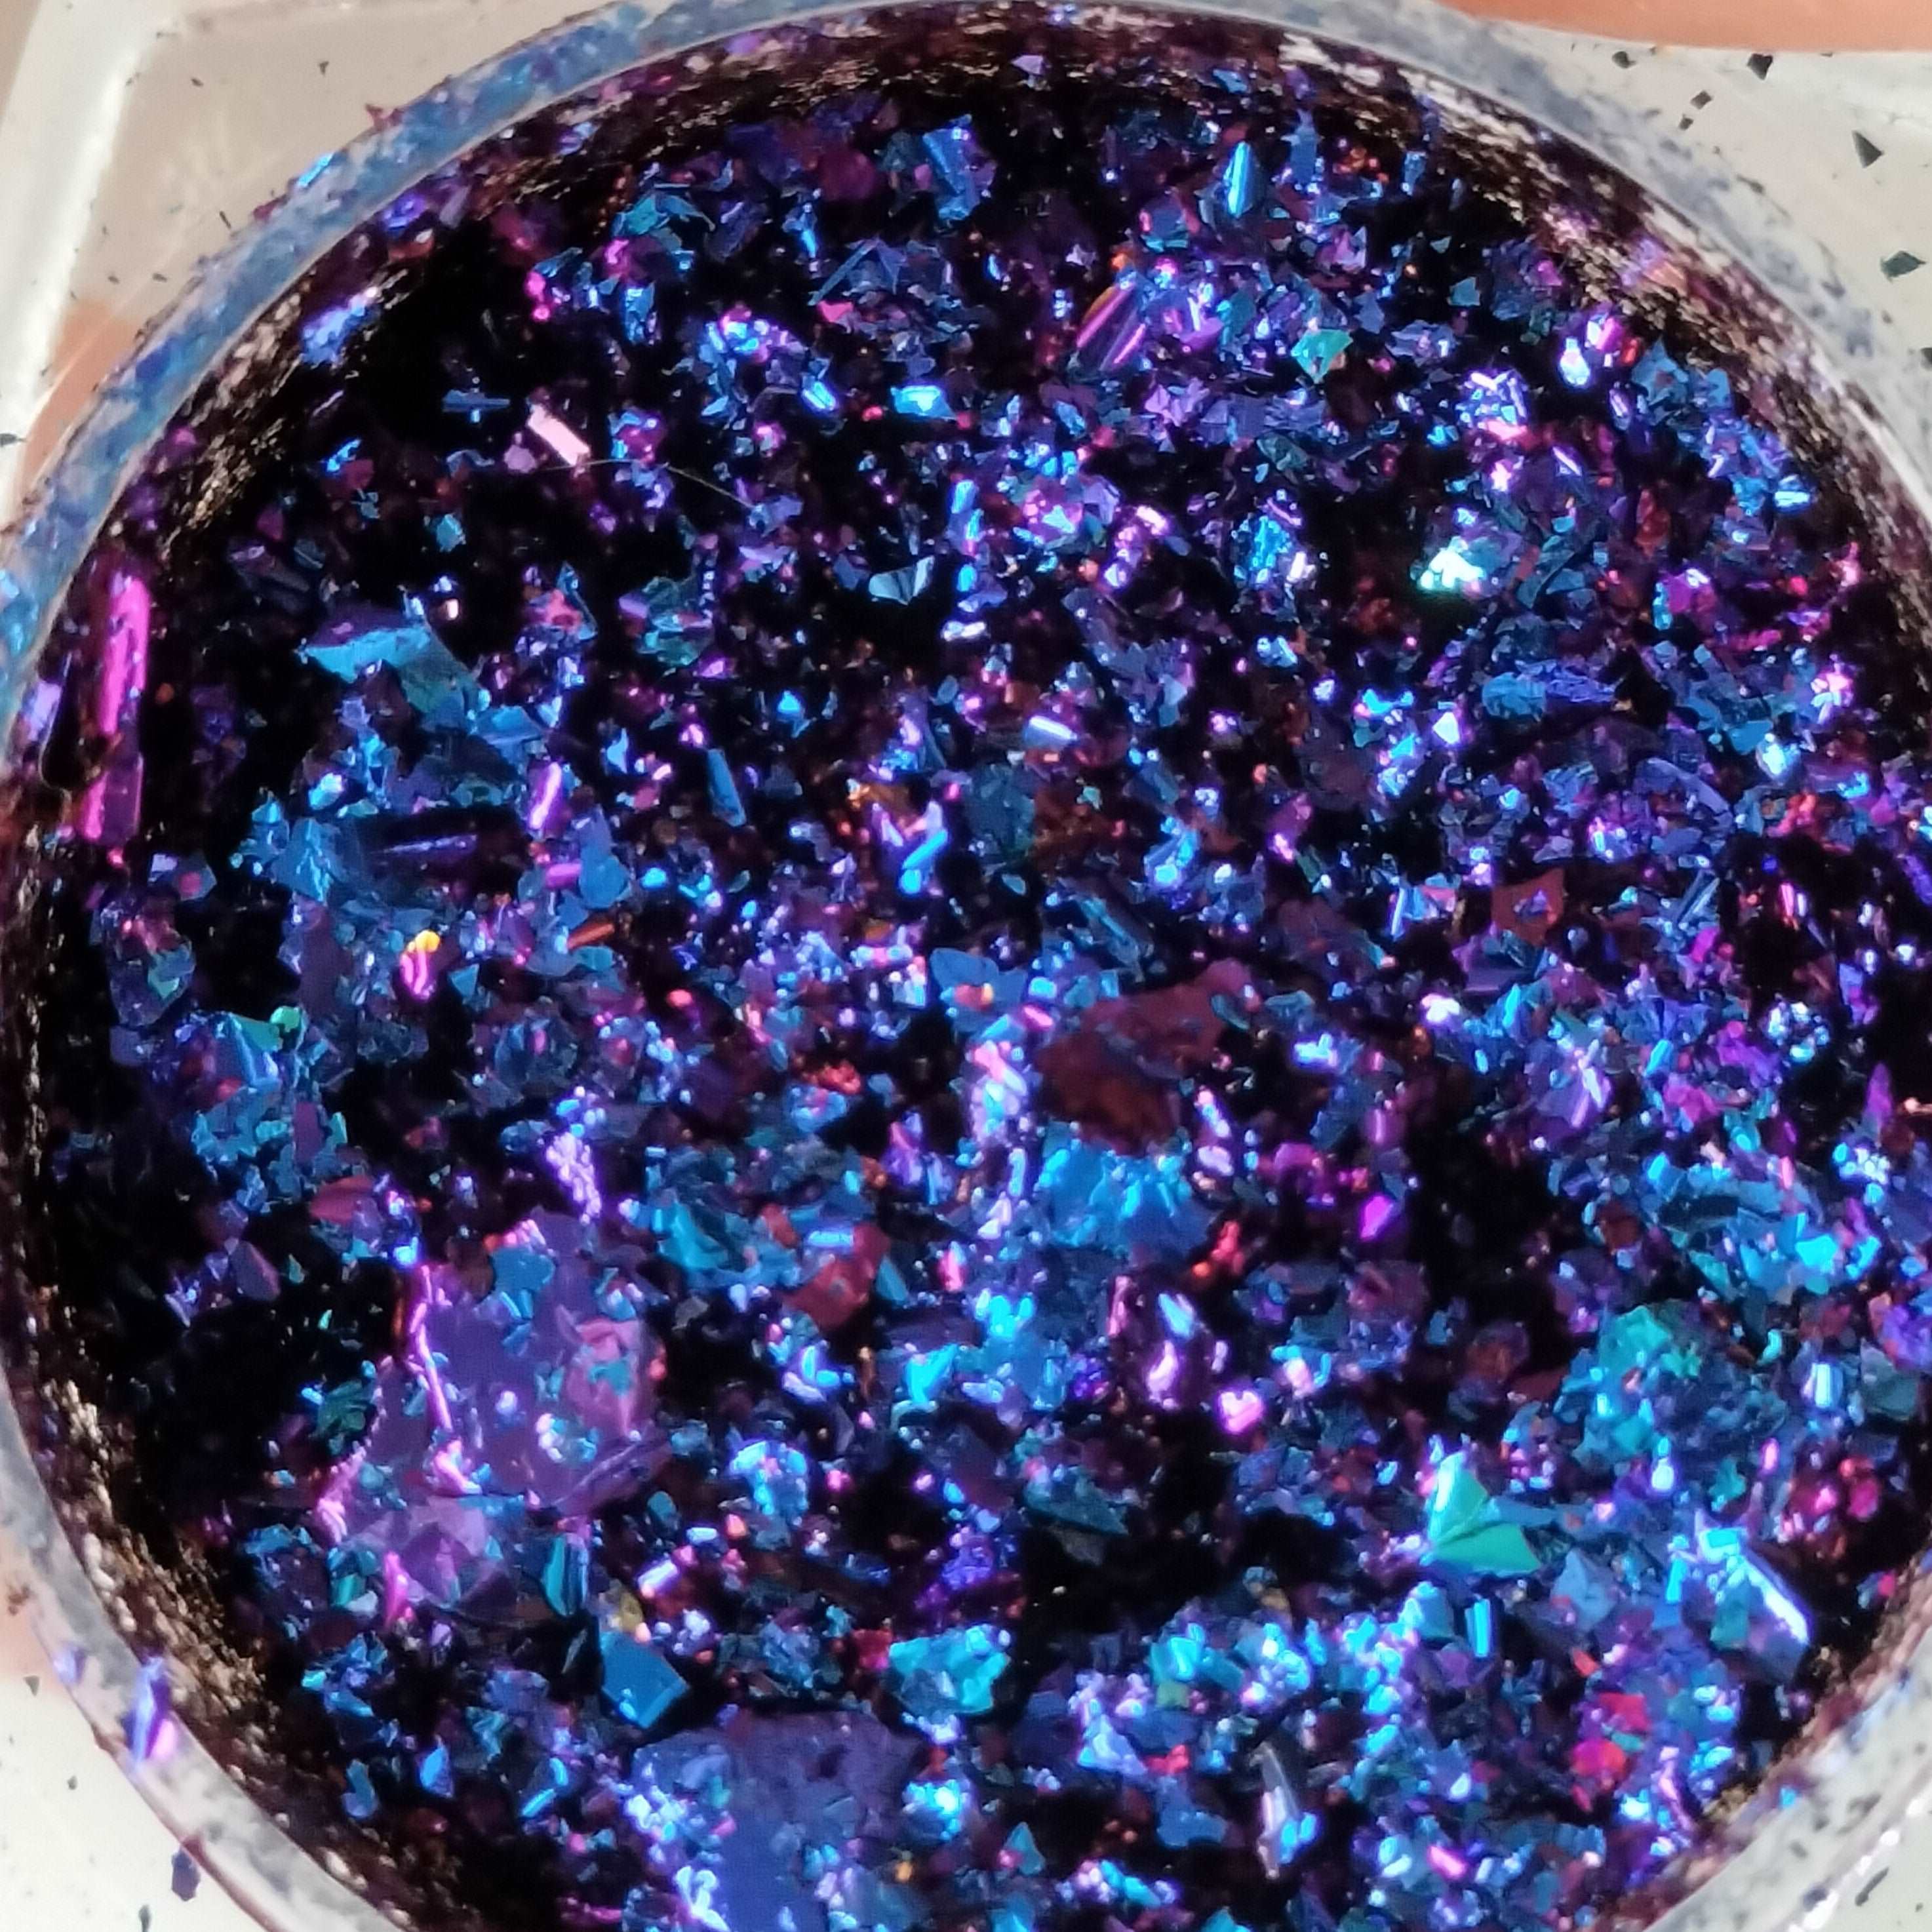 Blue-Violet Colour Shift Chameleon Flakes, Epoxy Resin Art, Brisbane, Australia